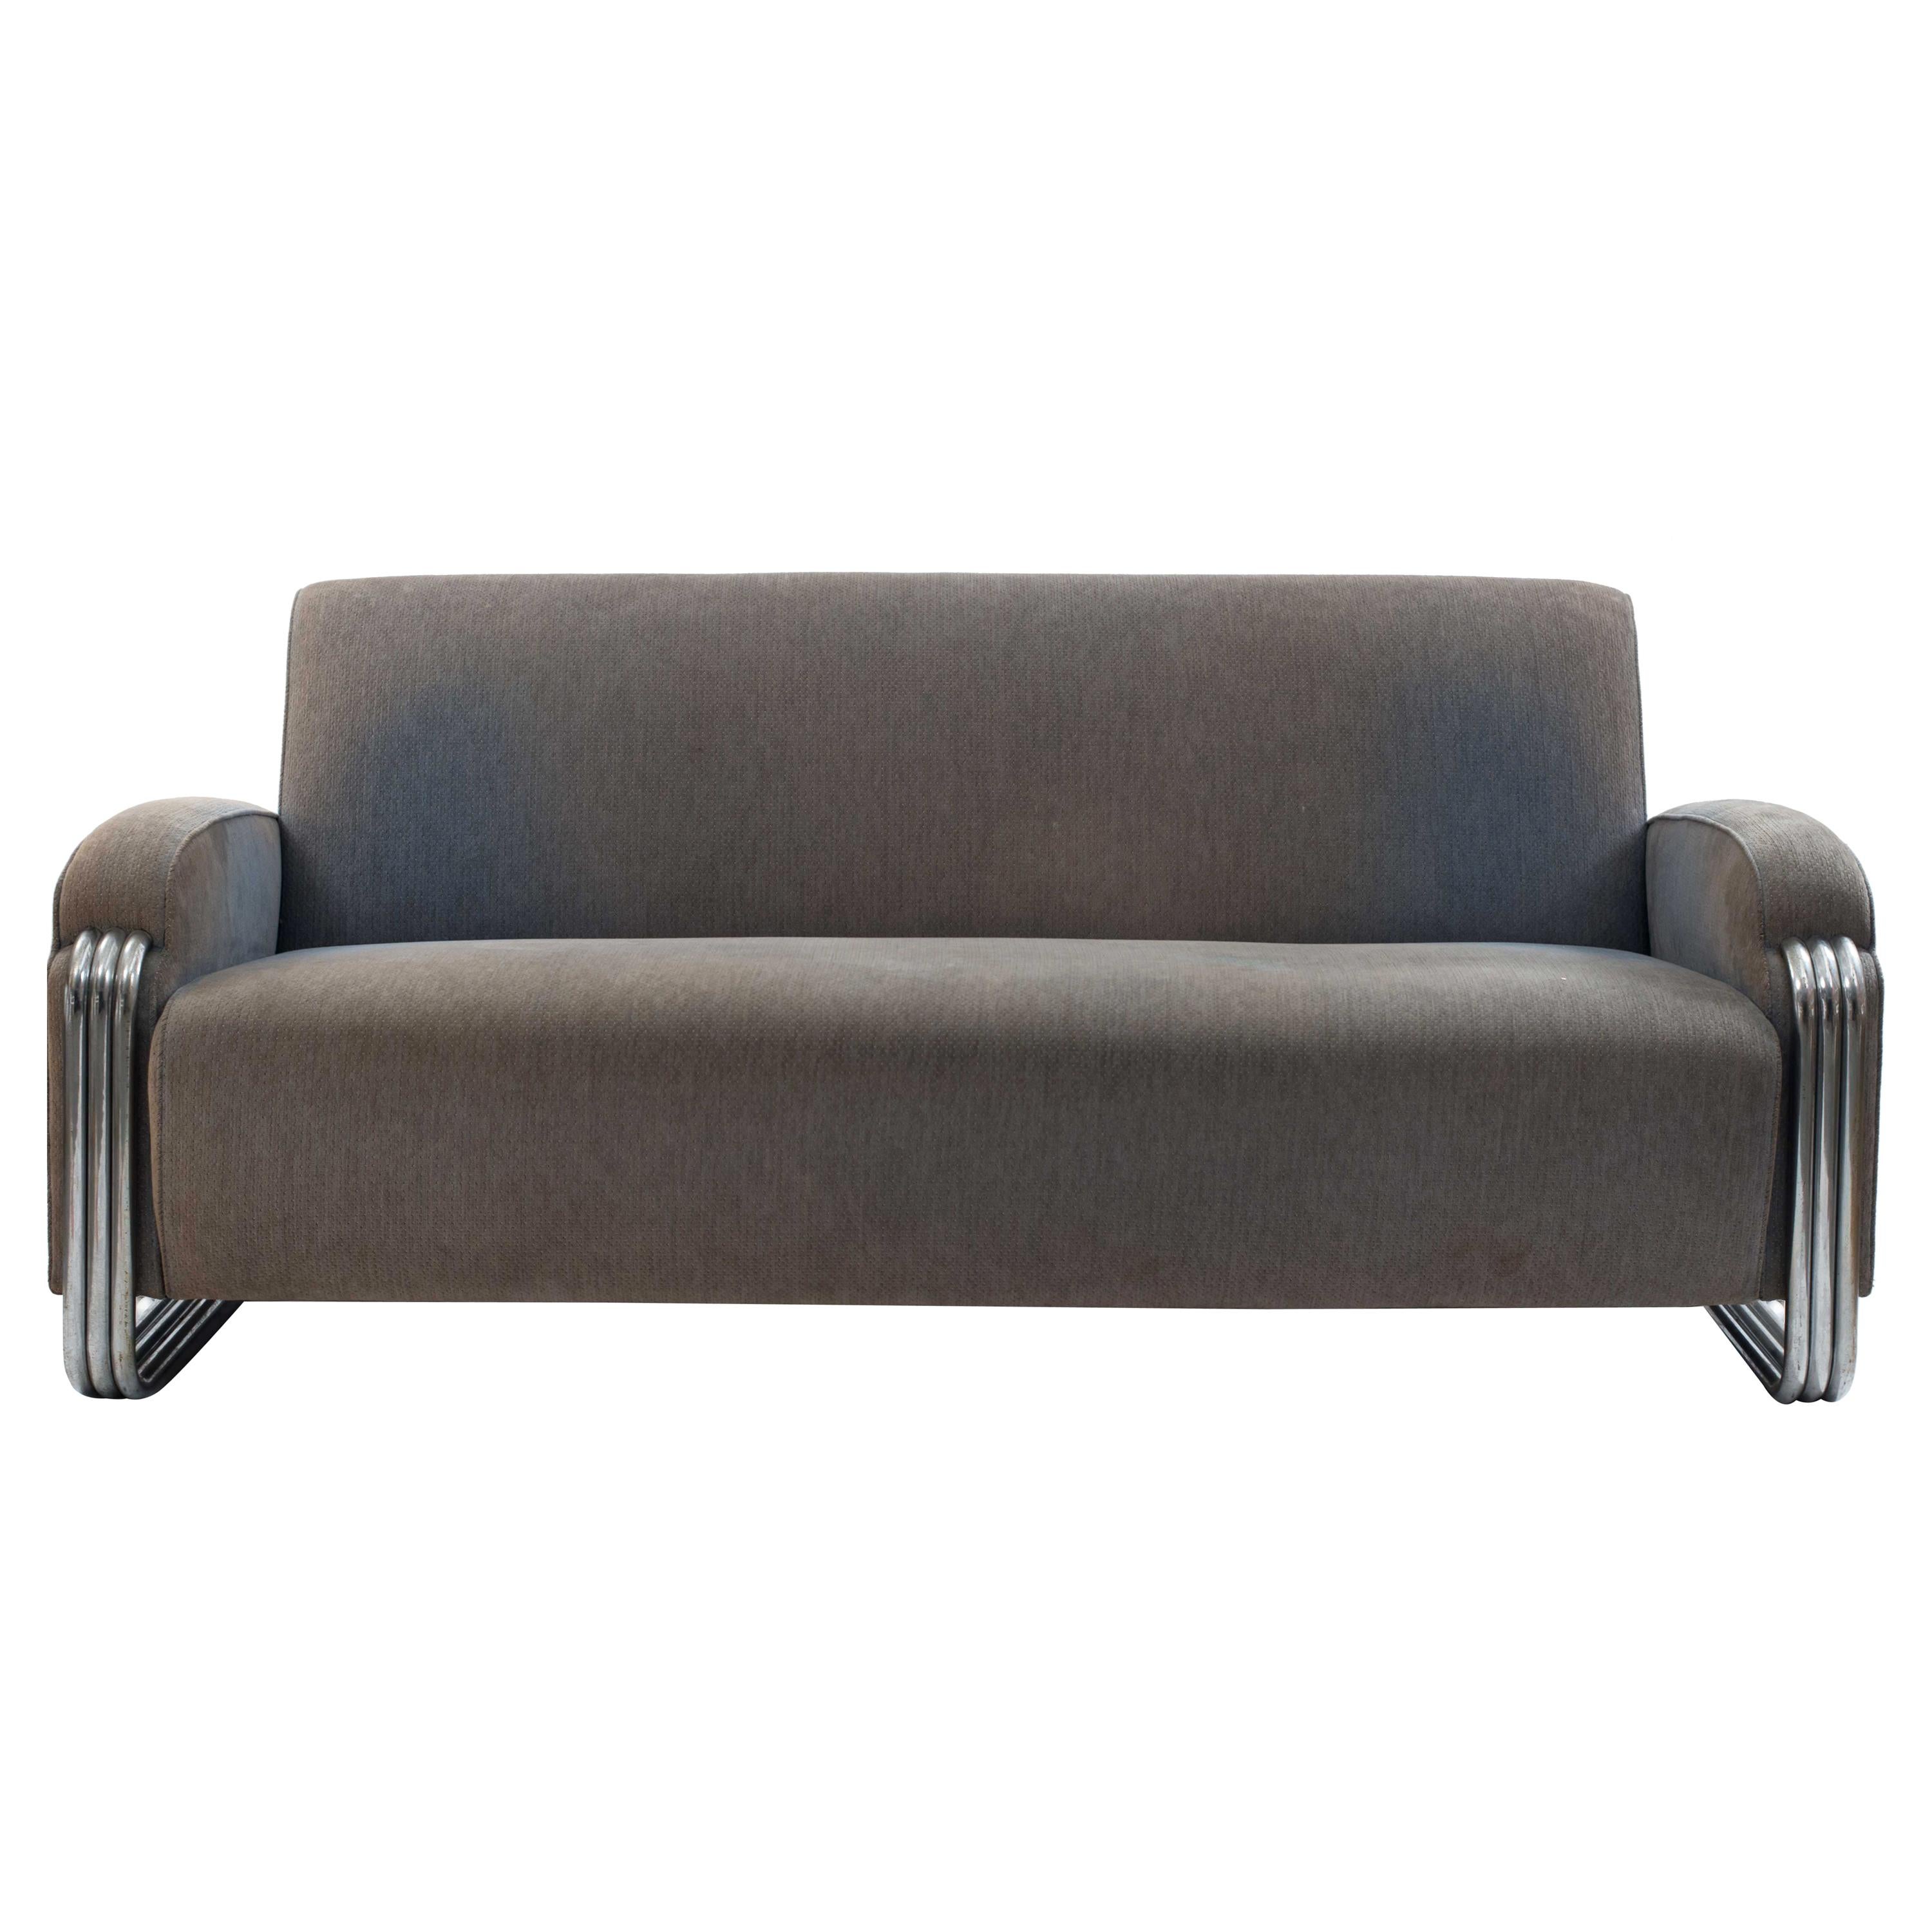 American Art Deco Gray Sofa For Sale